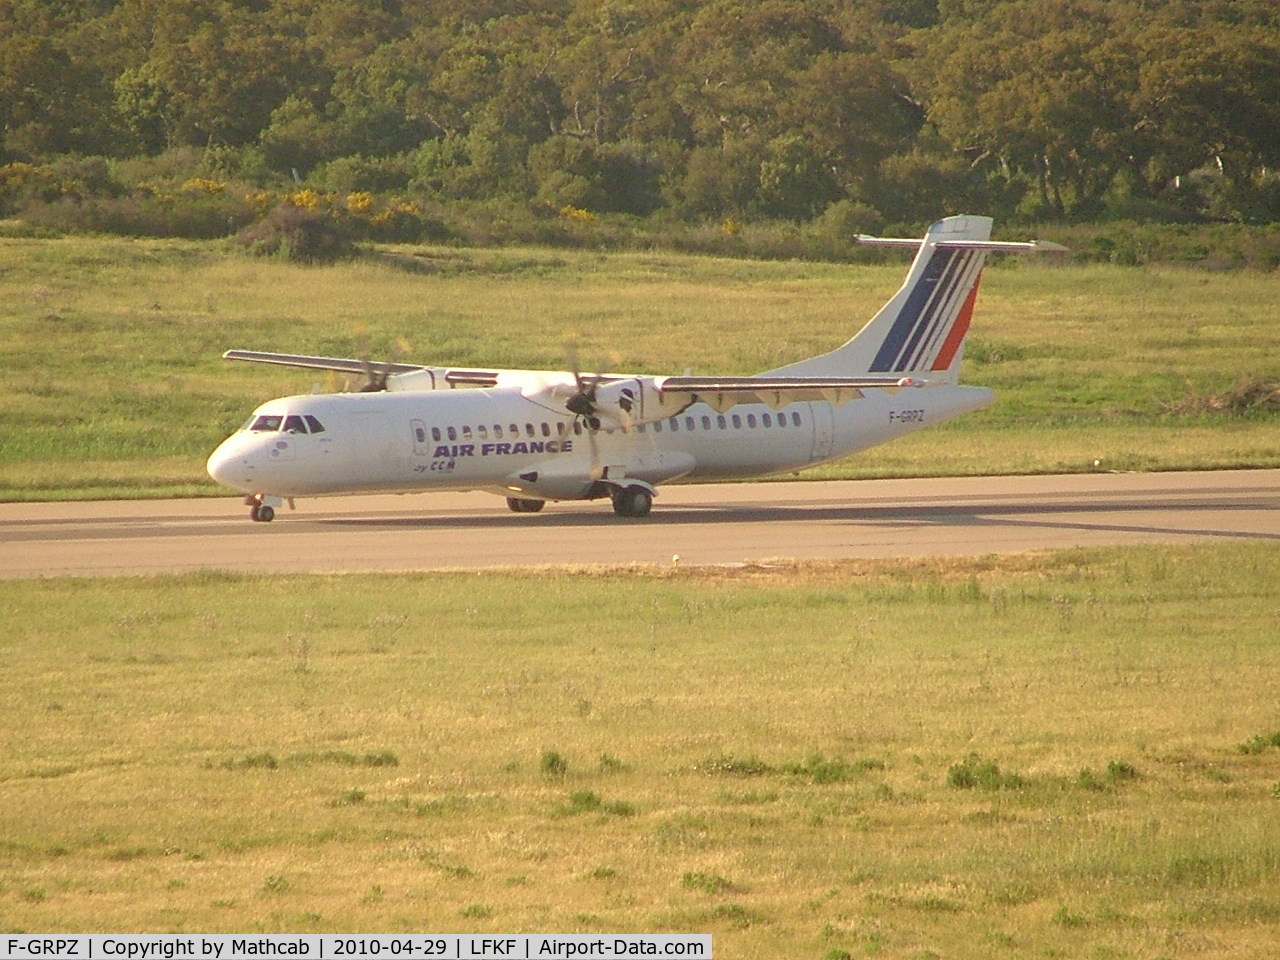 F-GRPZ, 2007 ATR 72-212A C/N 745, Aerospatiale ATR72-212A